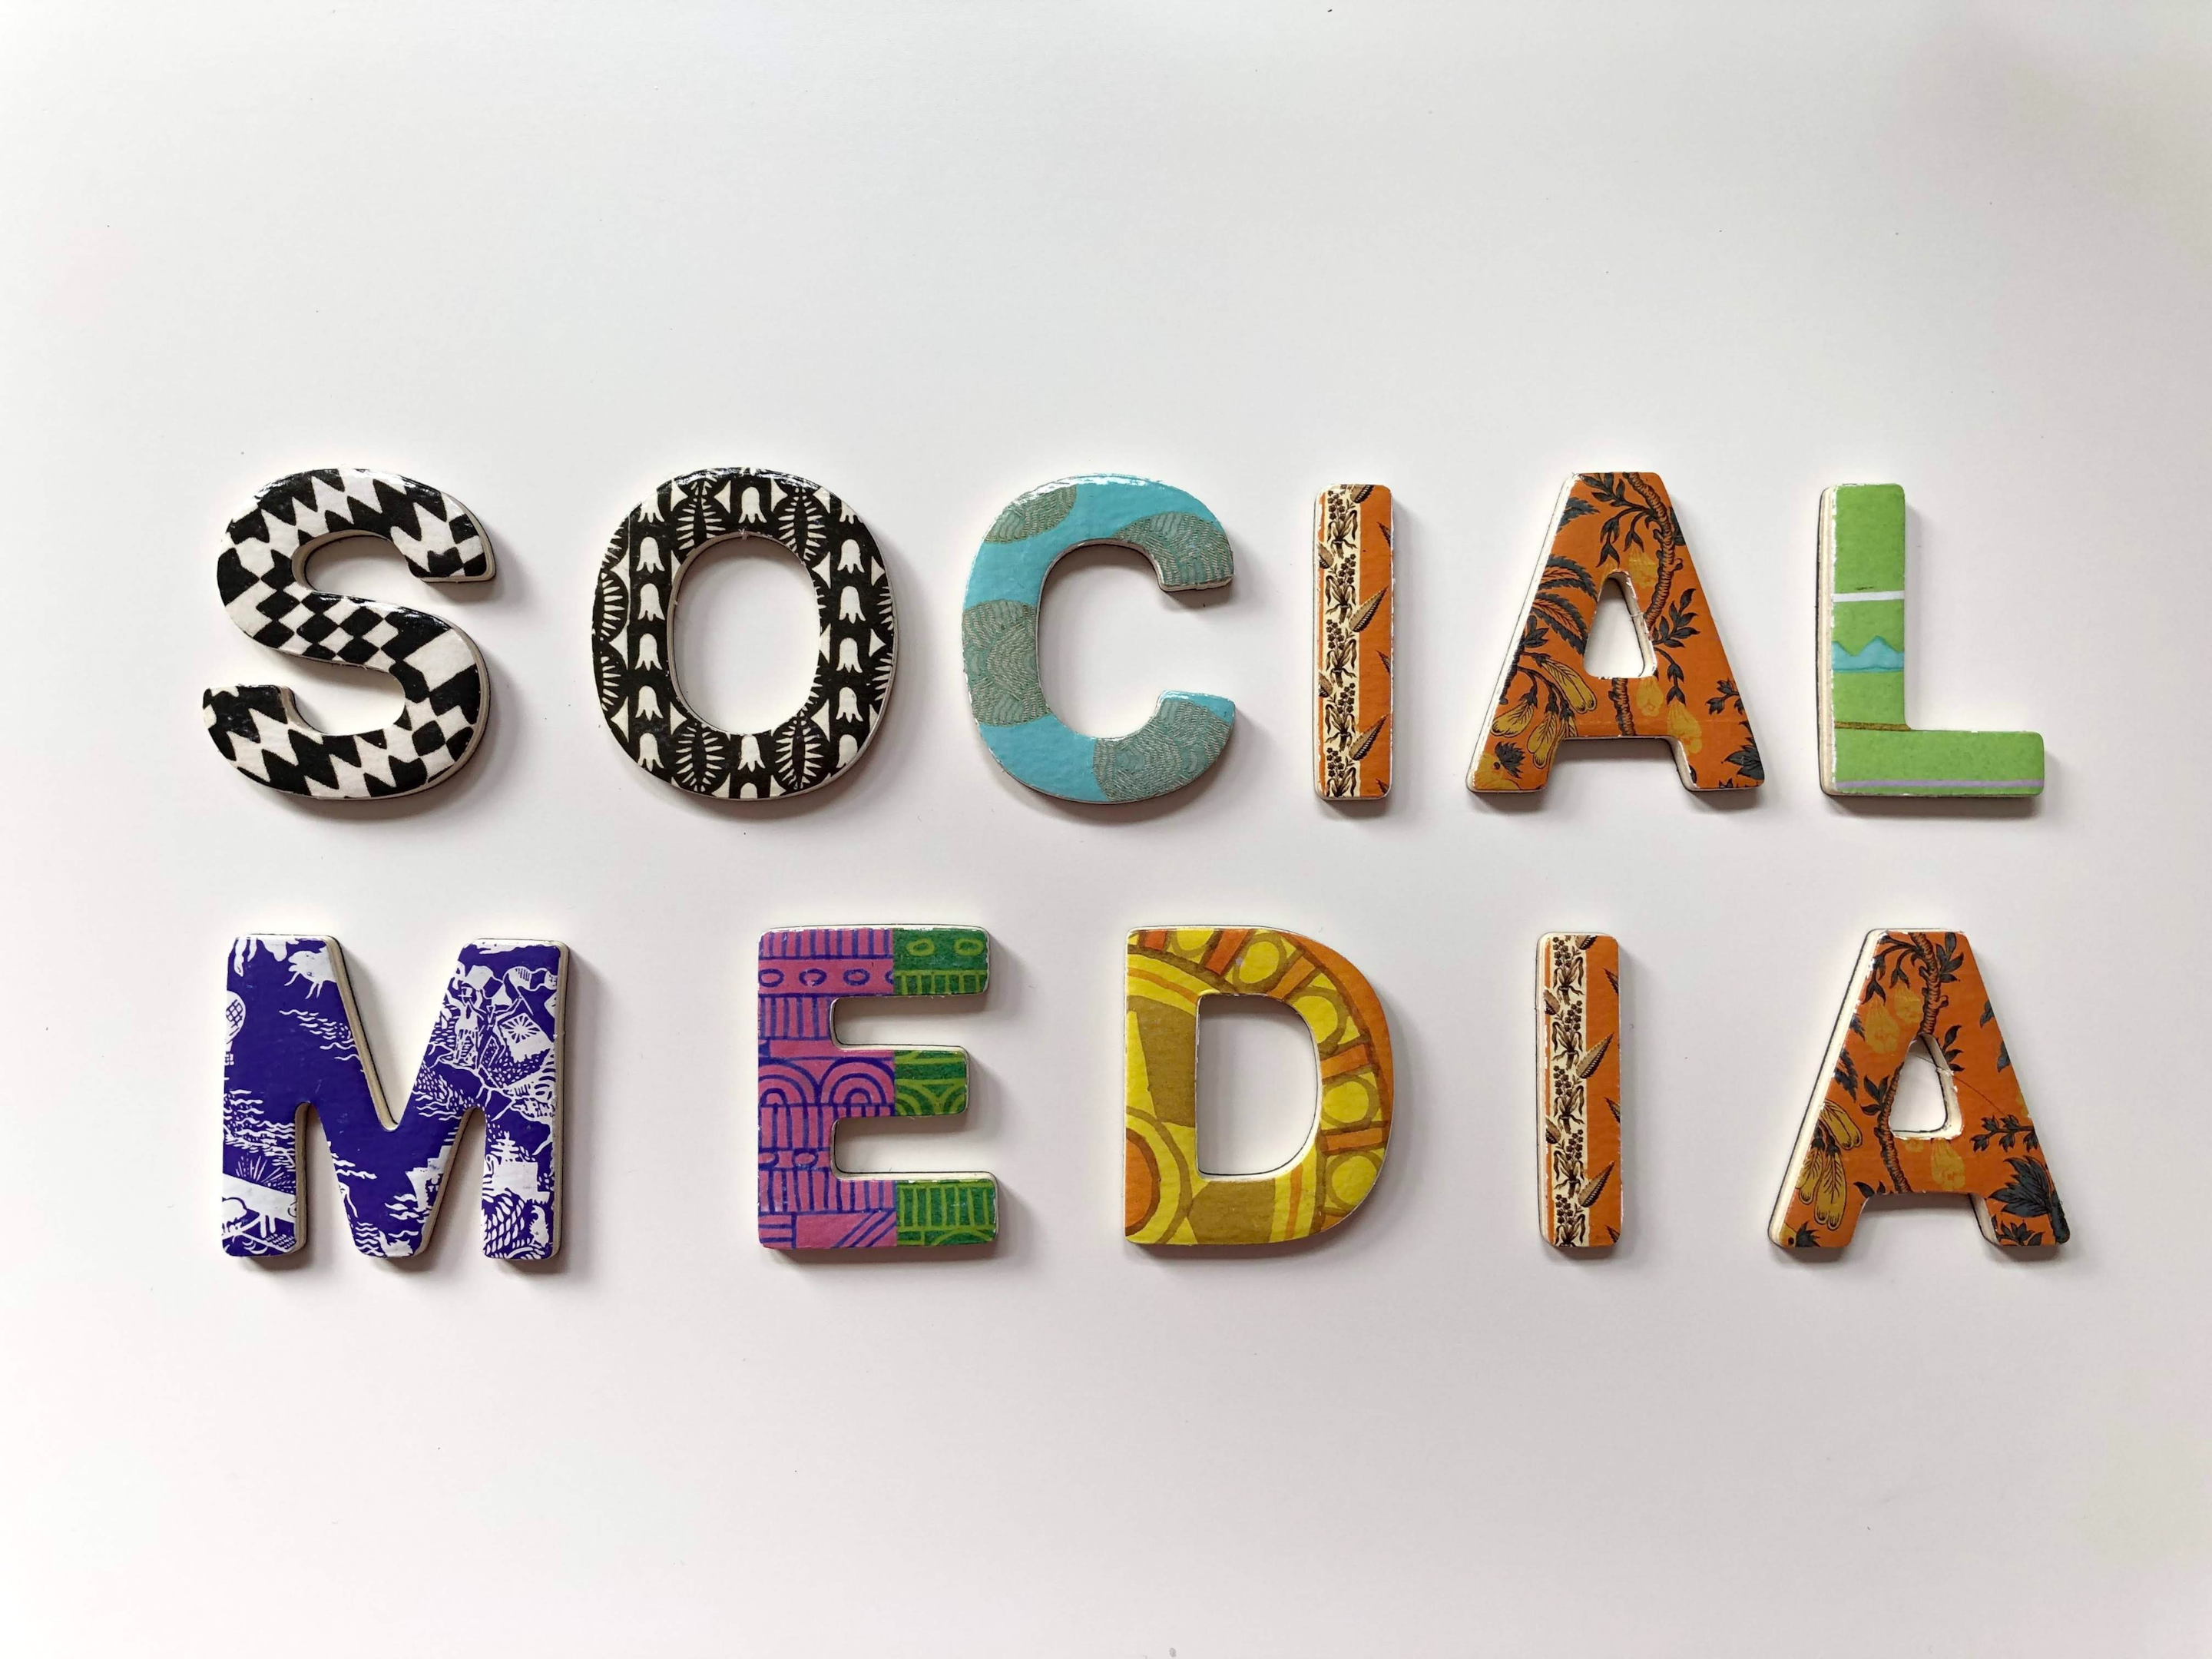 social media agency
social media marketing agency
top social media marketing companies